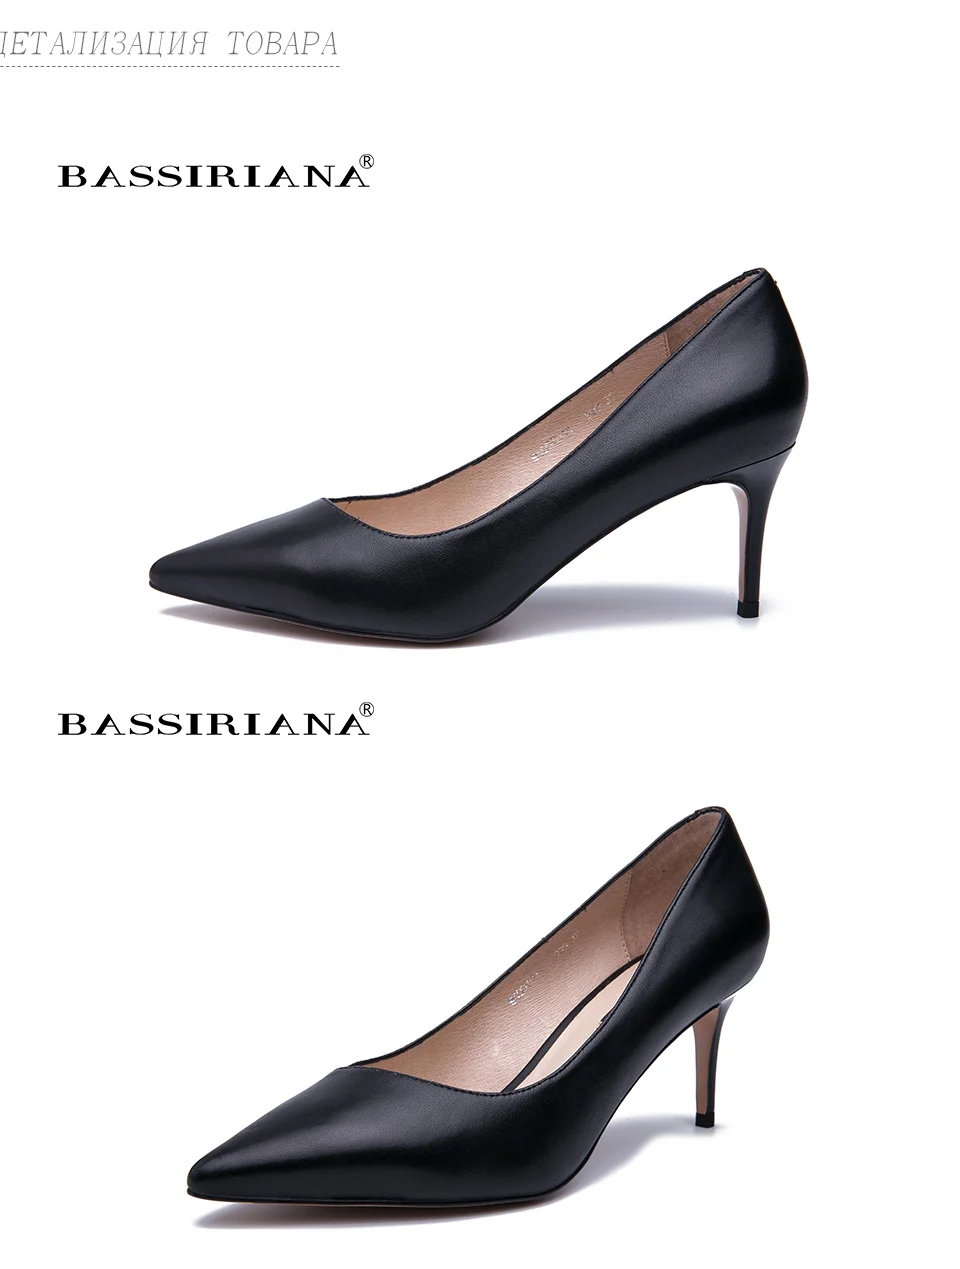 BASSIRIANA/ новые туфли на высоком каблуке, женские туфли-лодочки, женская обувь из натуральной кожи, классические черные туфли на высоком каблуке